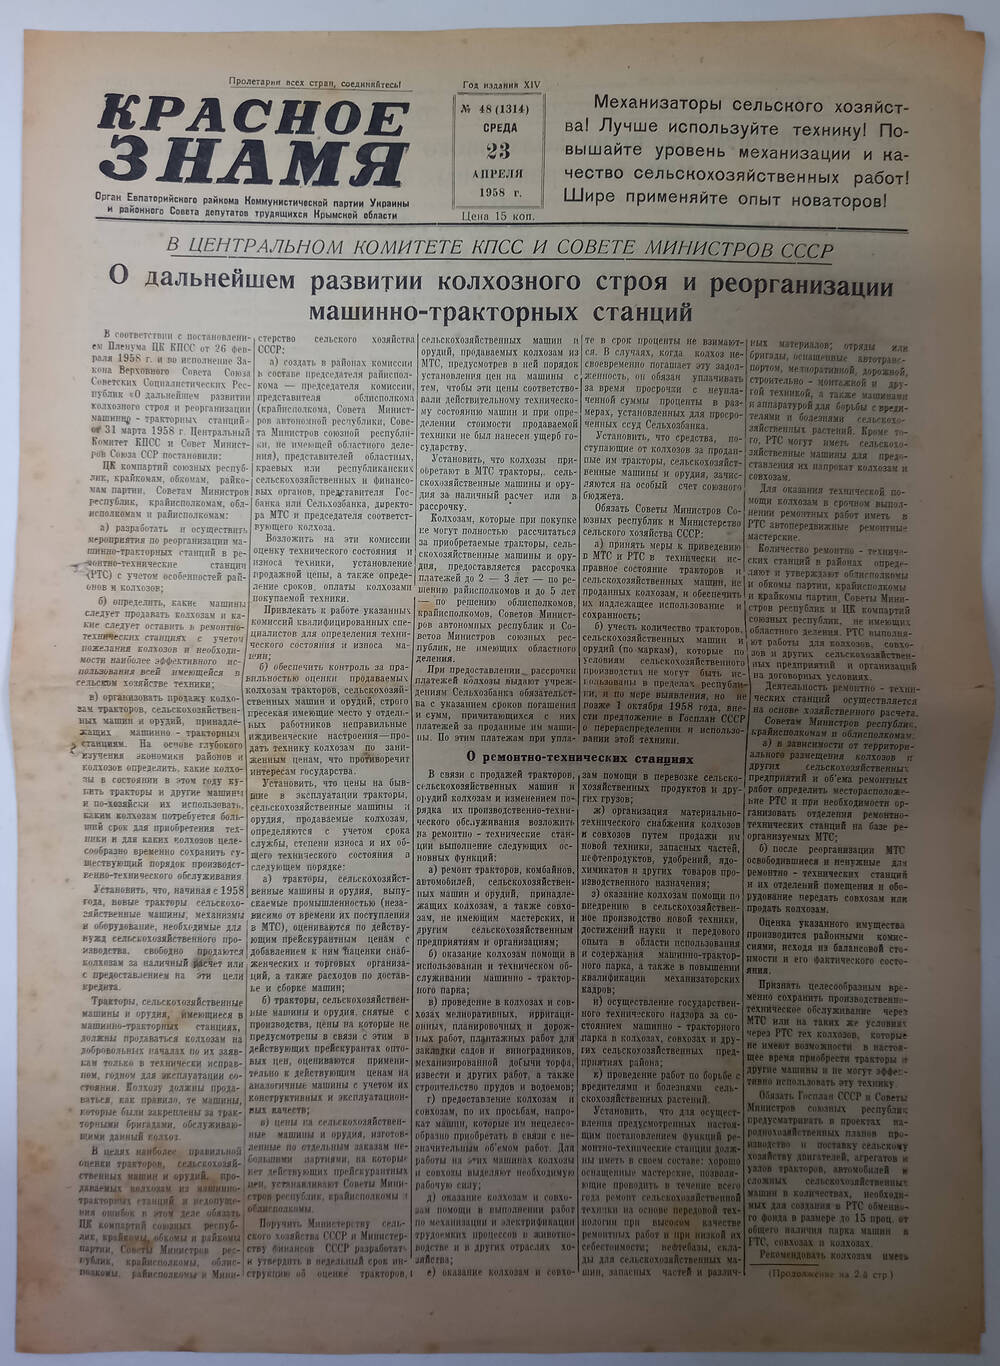 Газета Красное знамя №48(1314) от 23.04.1958 г.